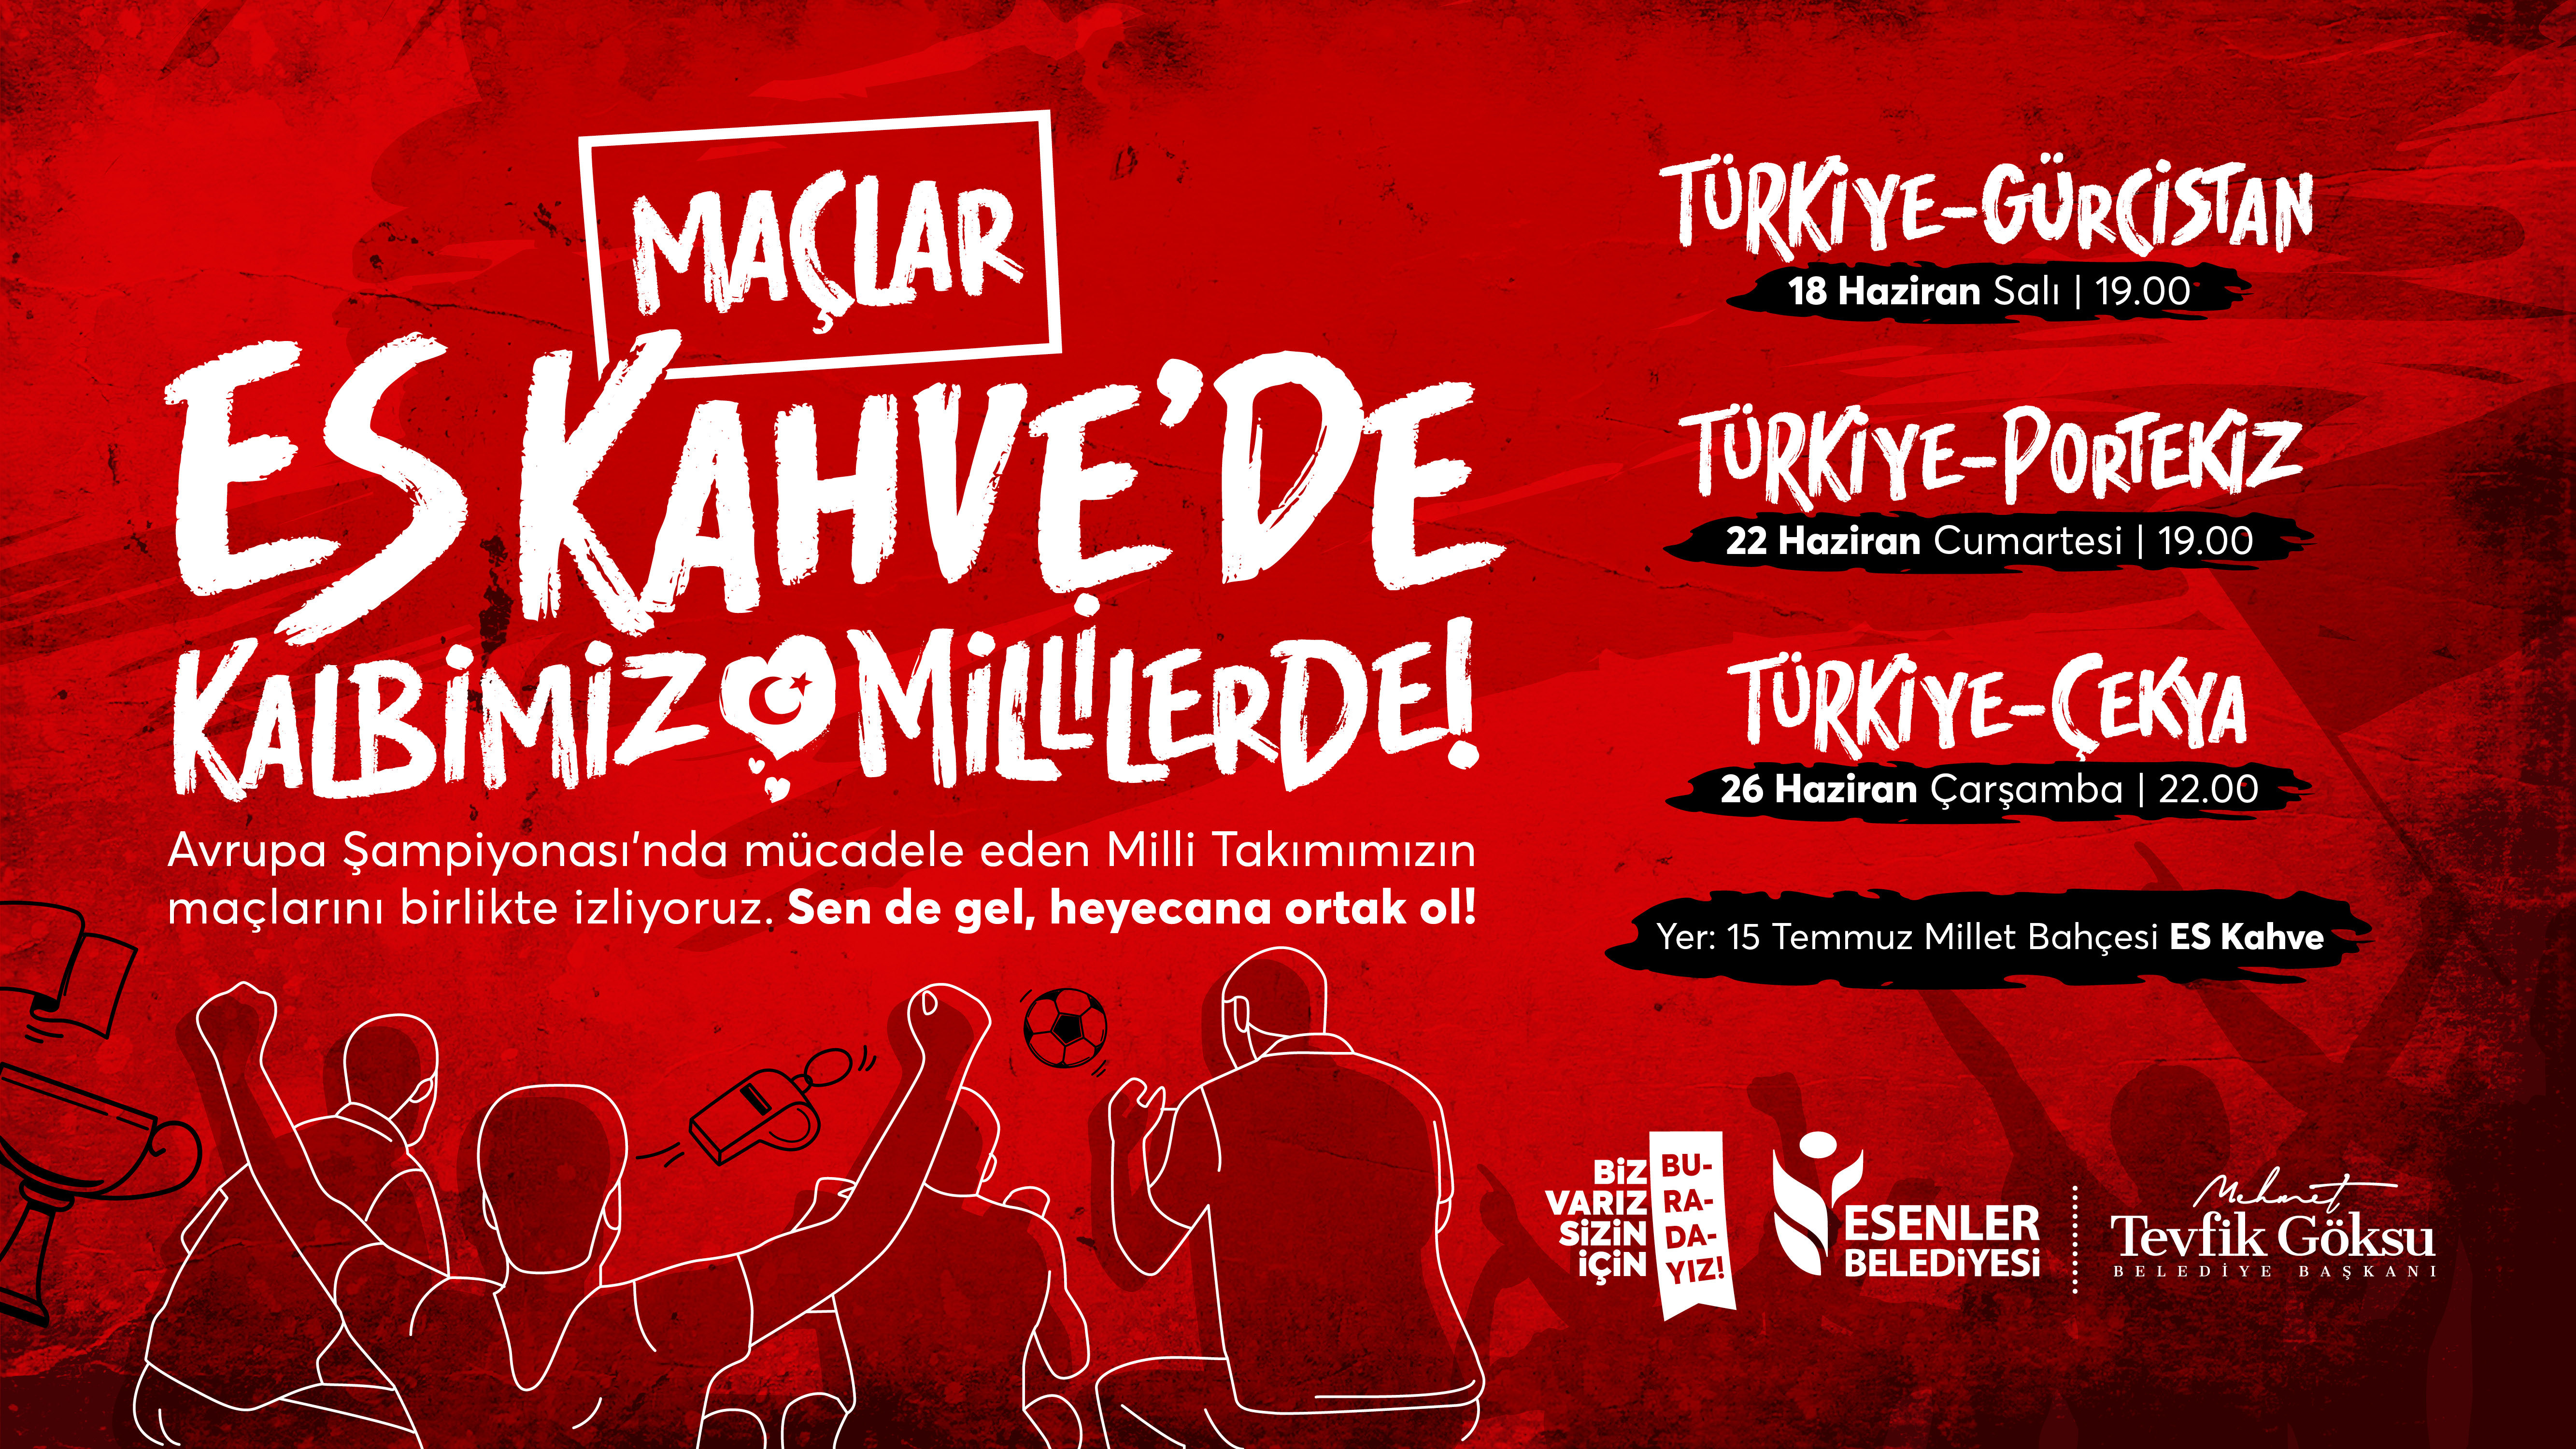 Maçlar Es Kahve'de Kalbimiz Türk Millerle!